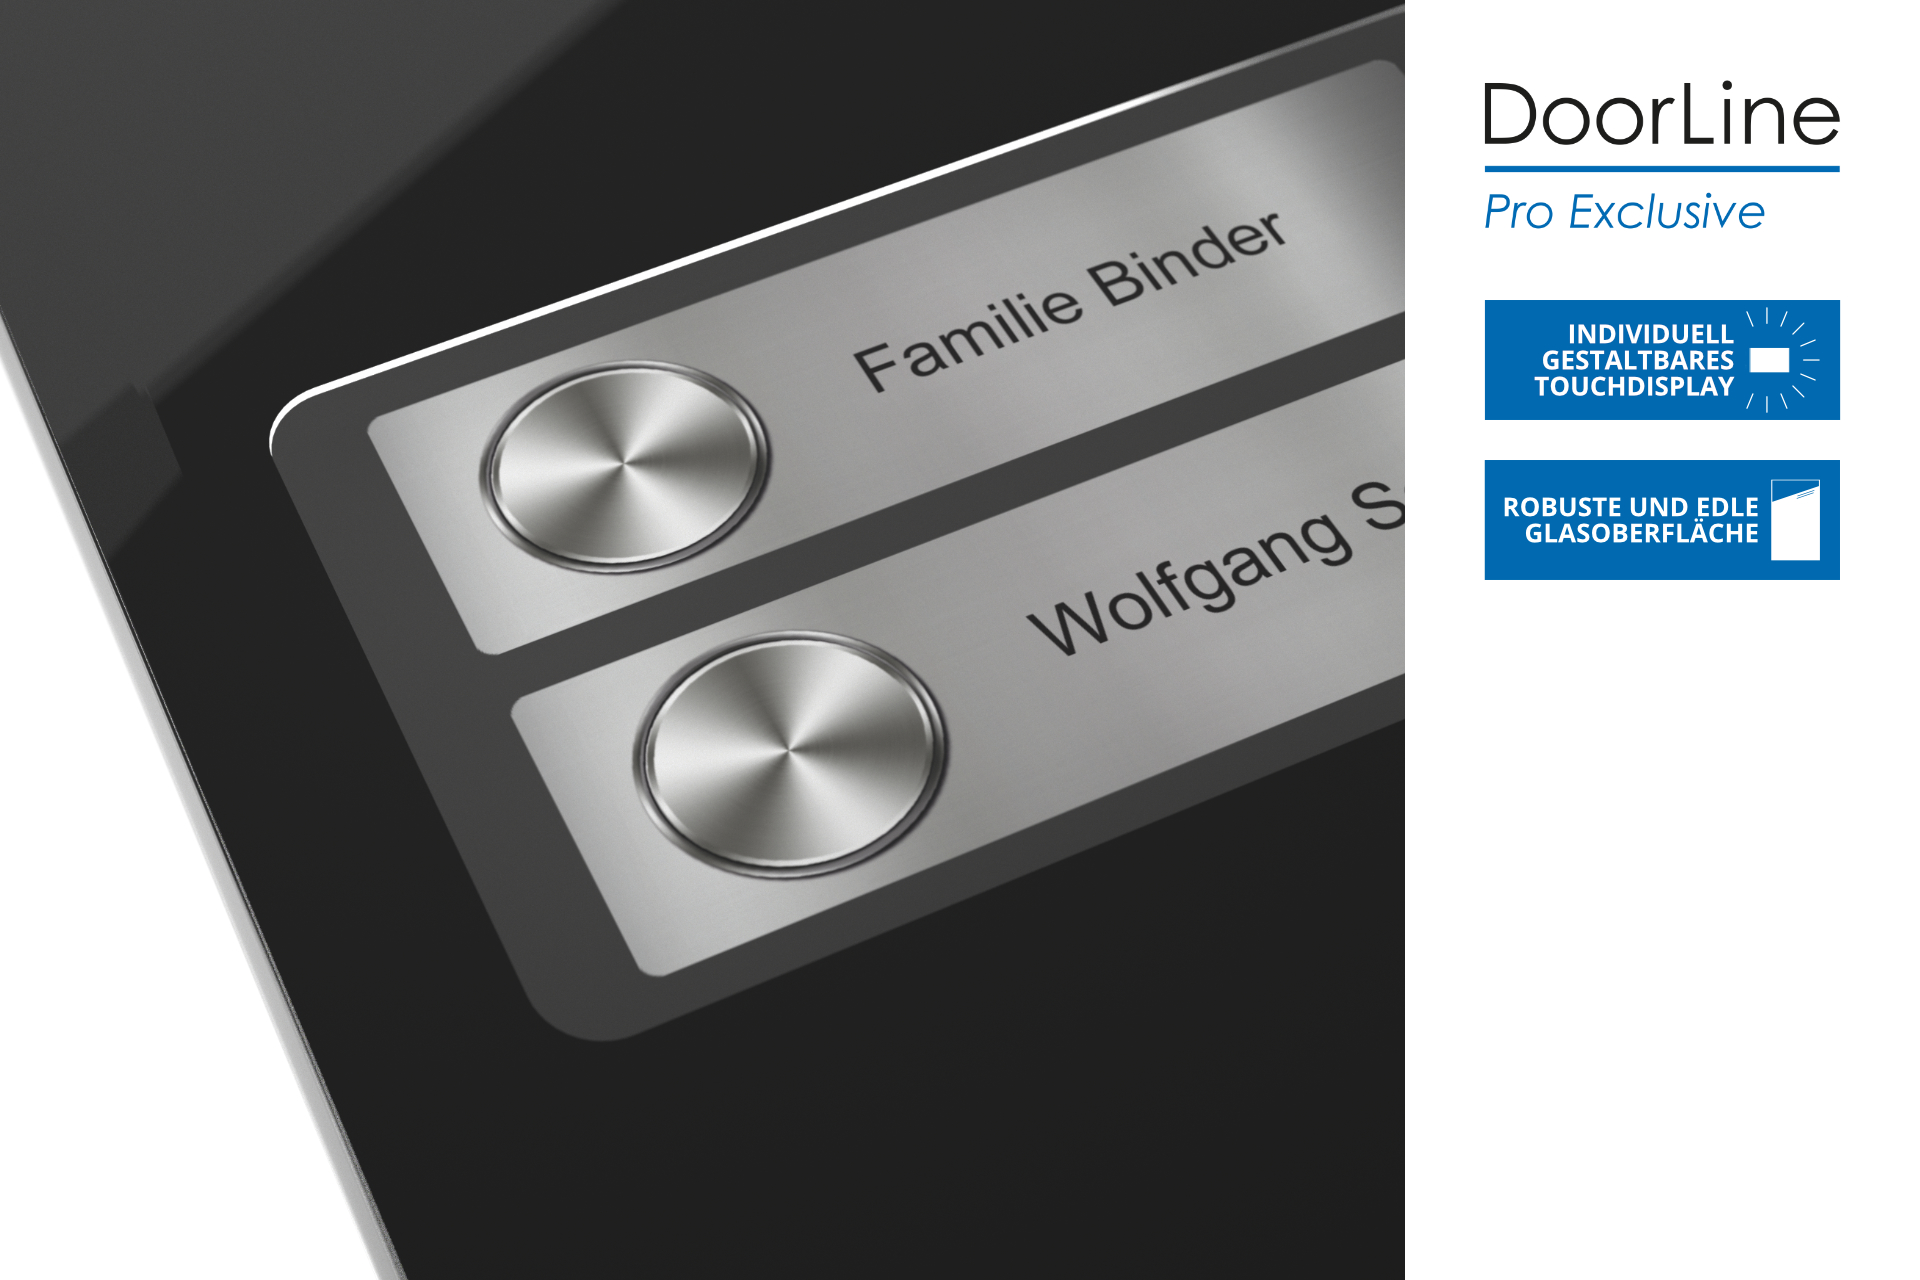 DoorLine Pro Exclusive | Türsprechanlage für Telefonanlage/Router | Touchdisplay | bis zu 4 Klingeltasten | Zutrittskontrolle